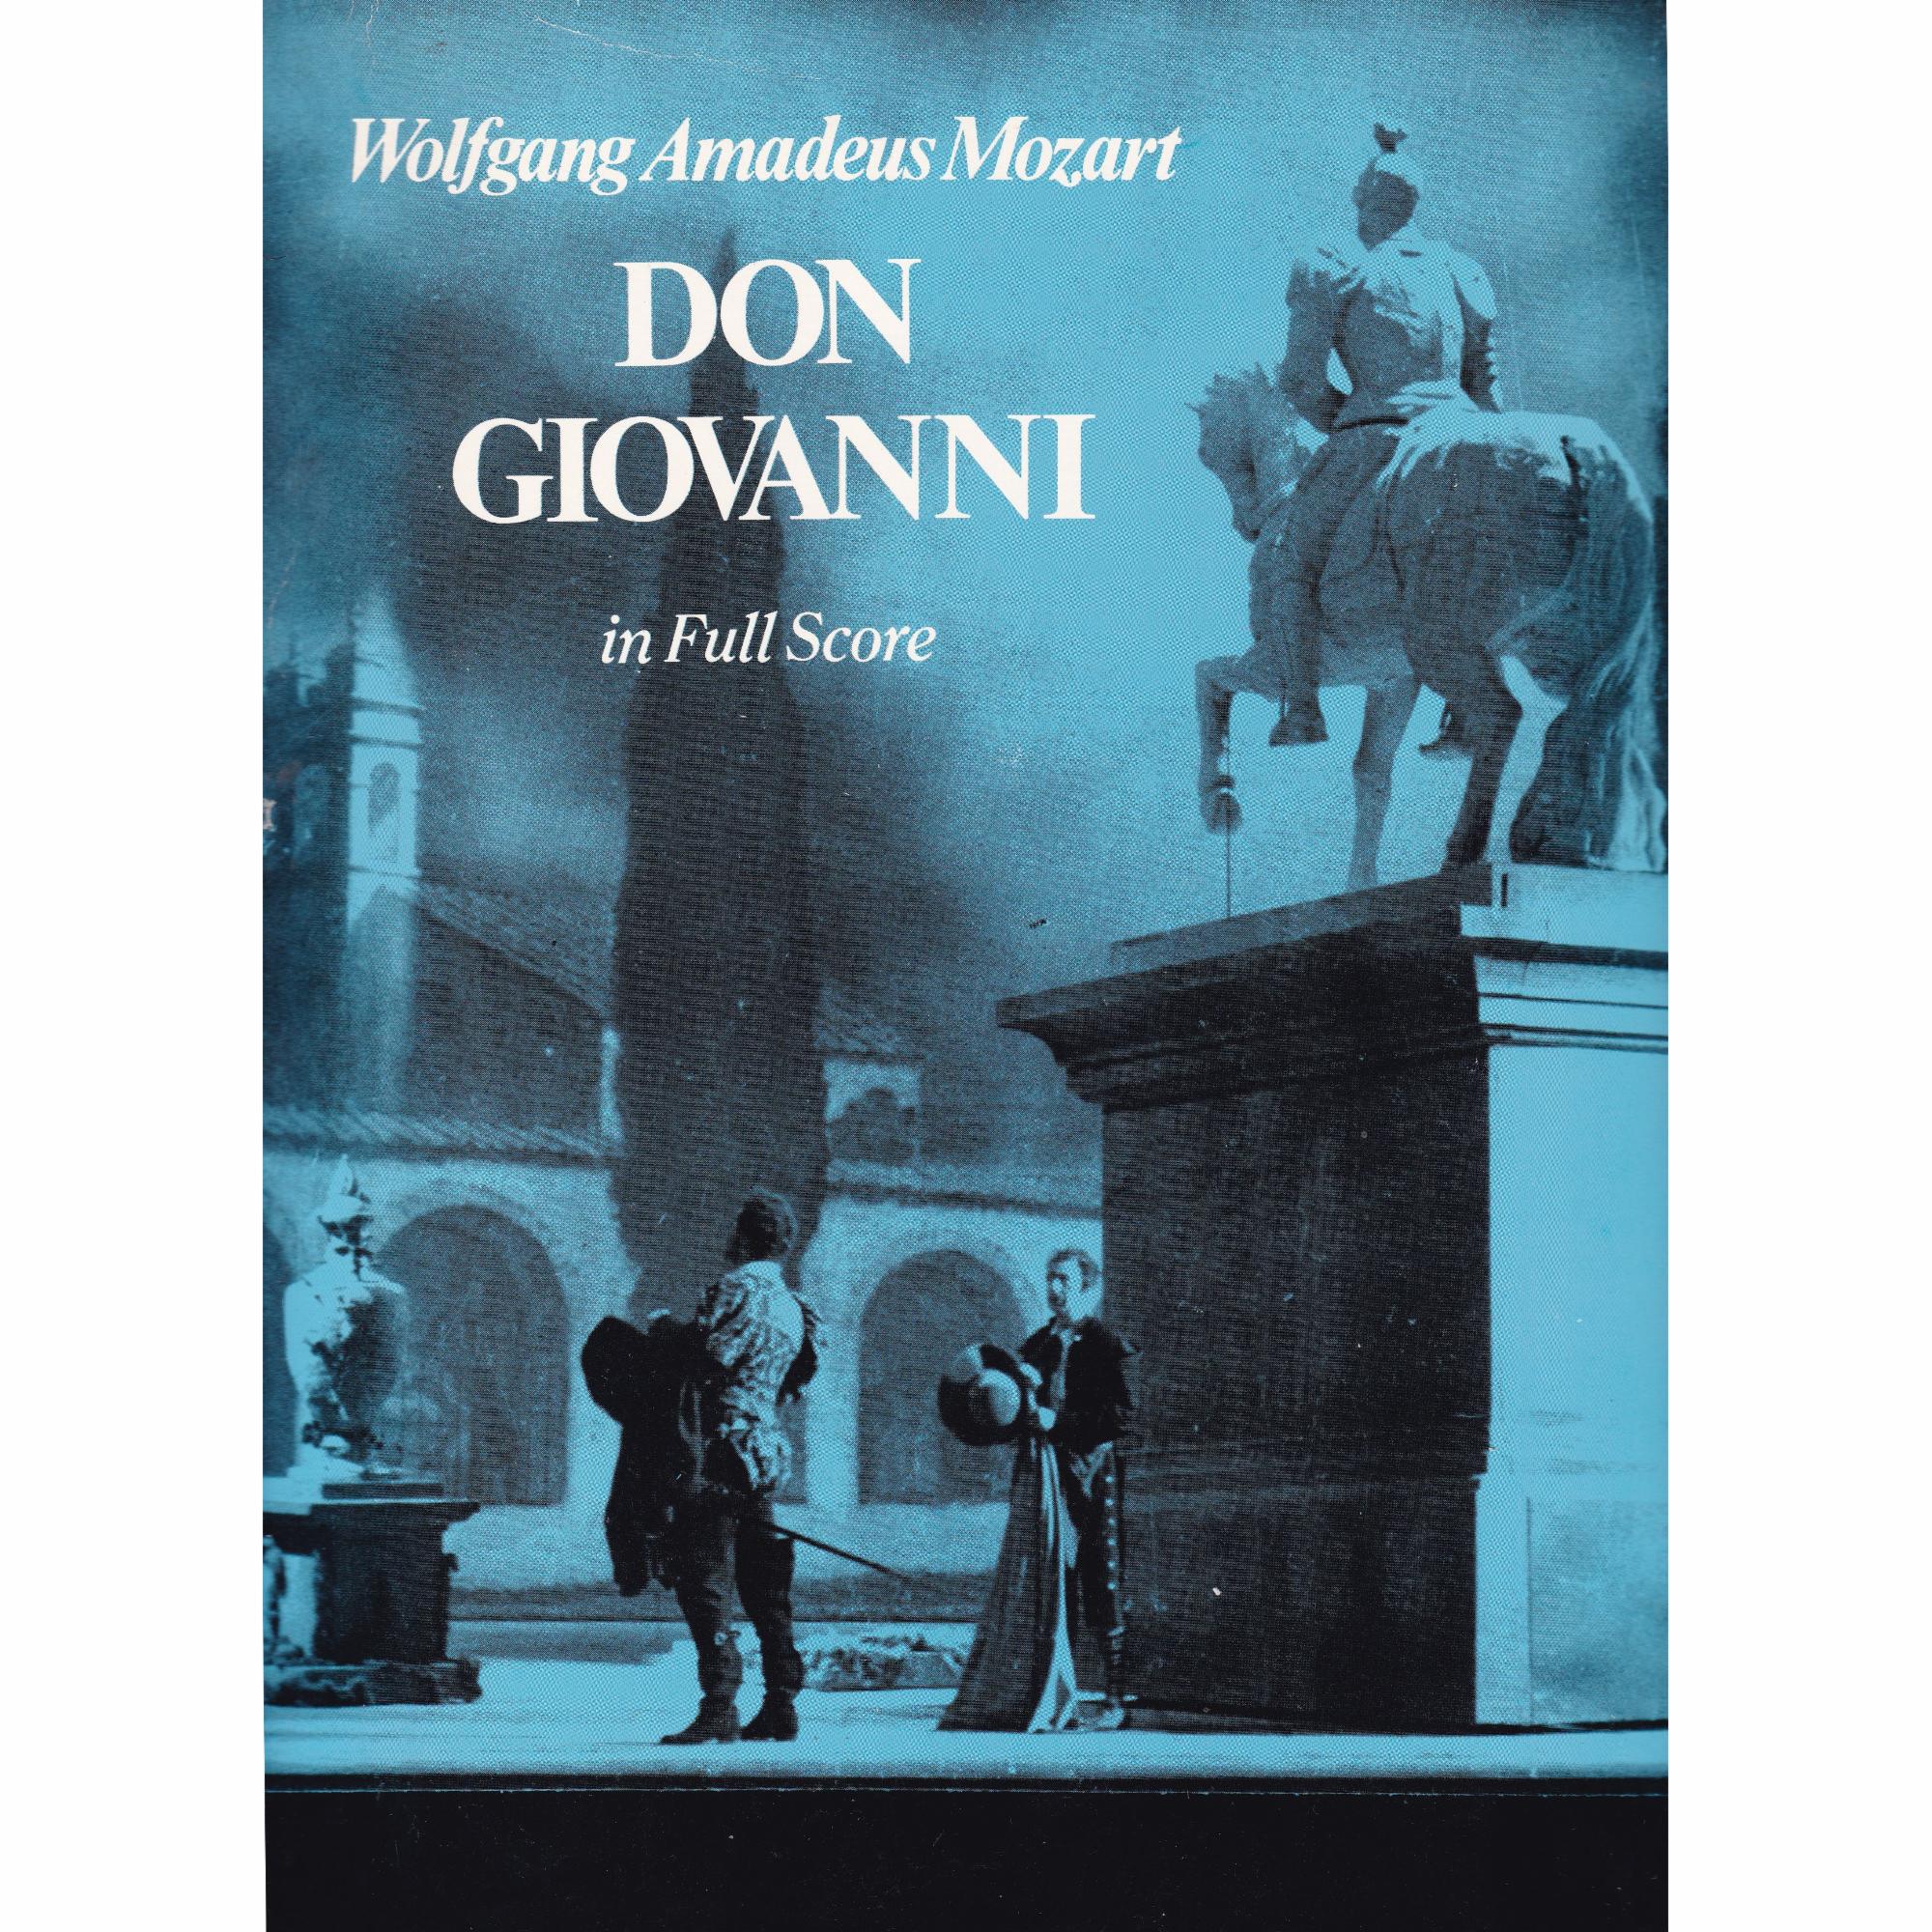 Don Giovanni in Full Score